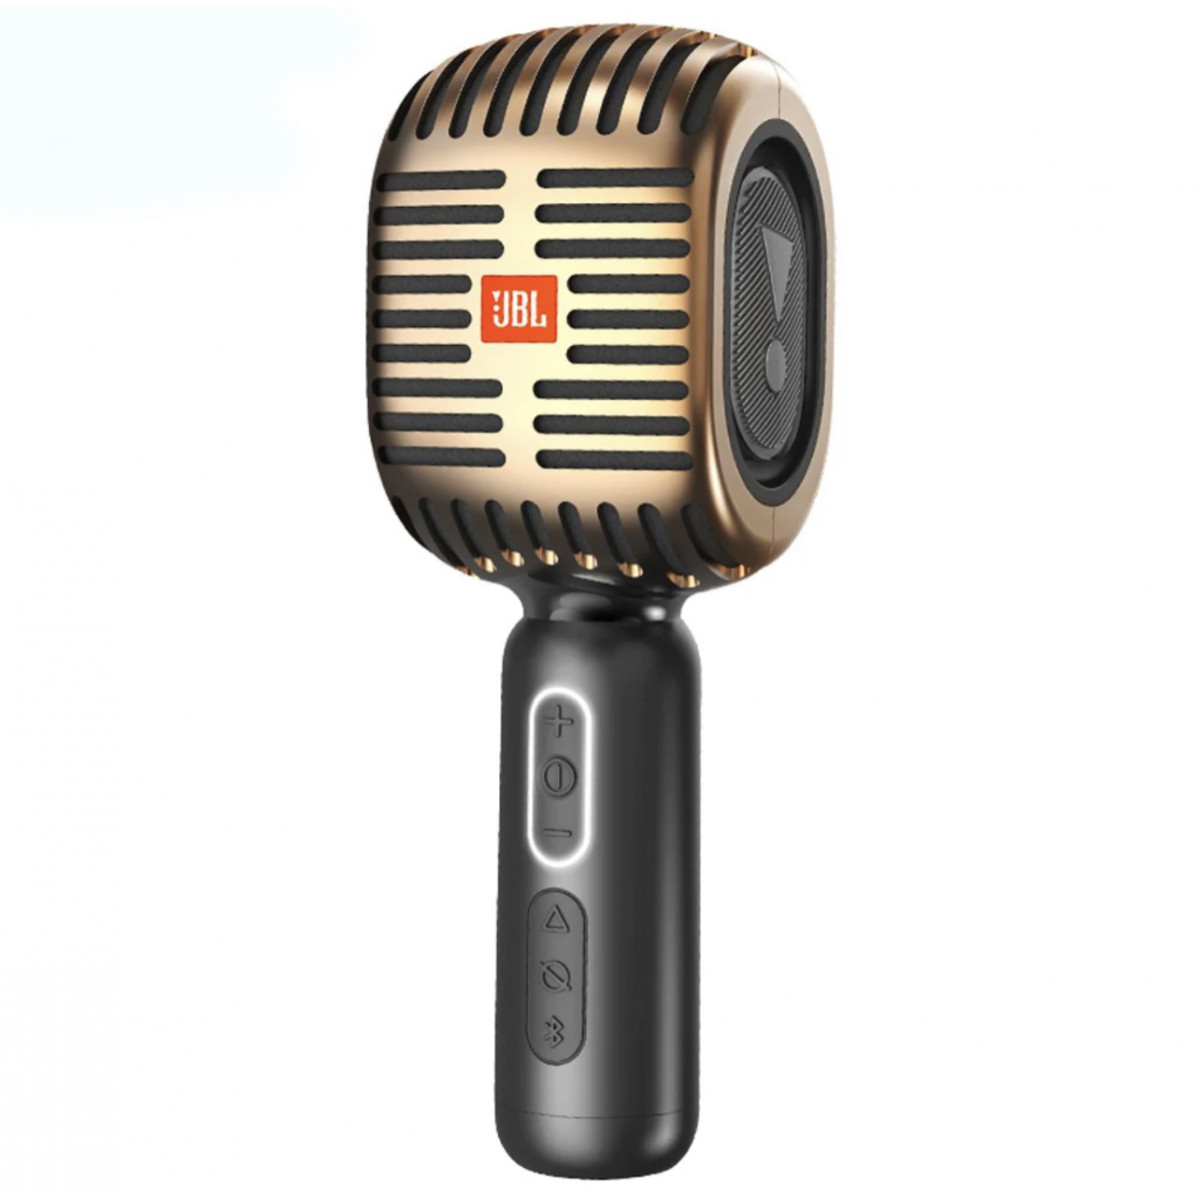 Беспроводной караоке микрофон JBL KMC 600 золотистый